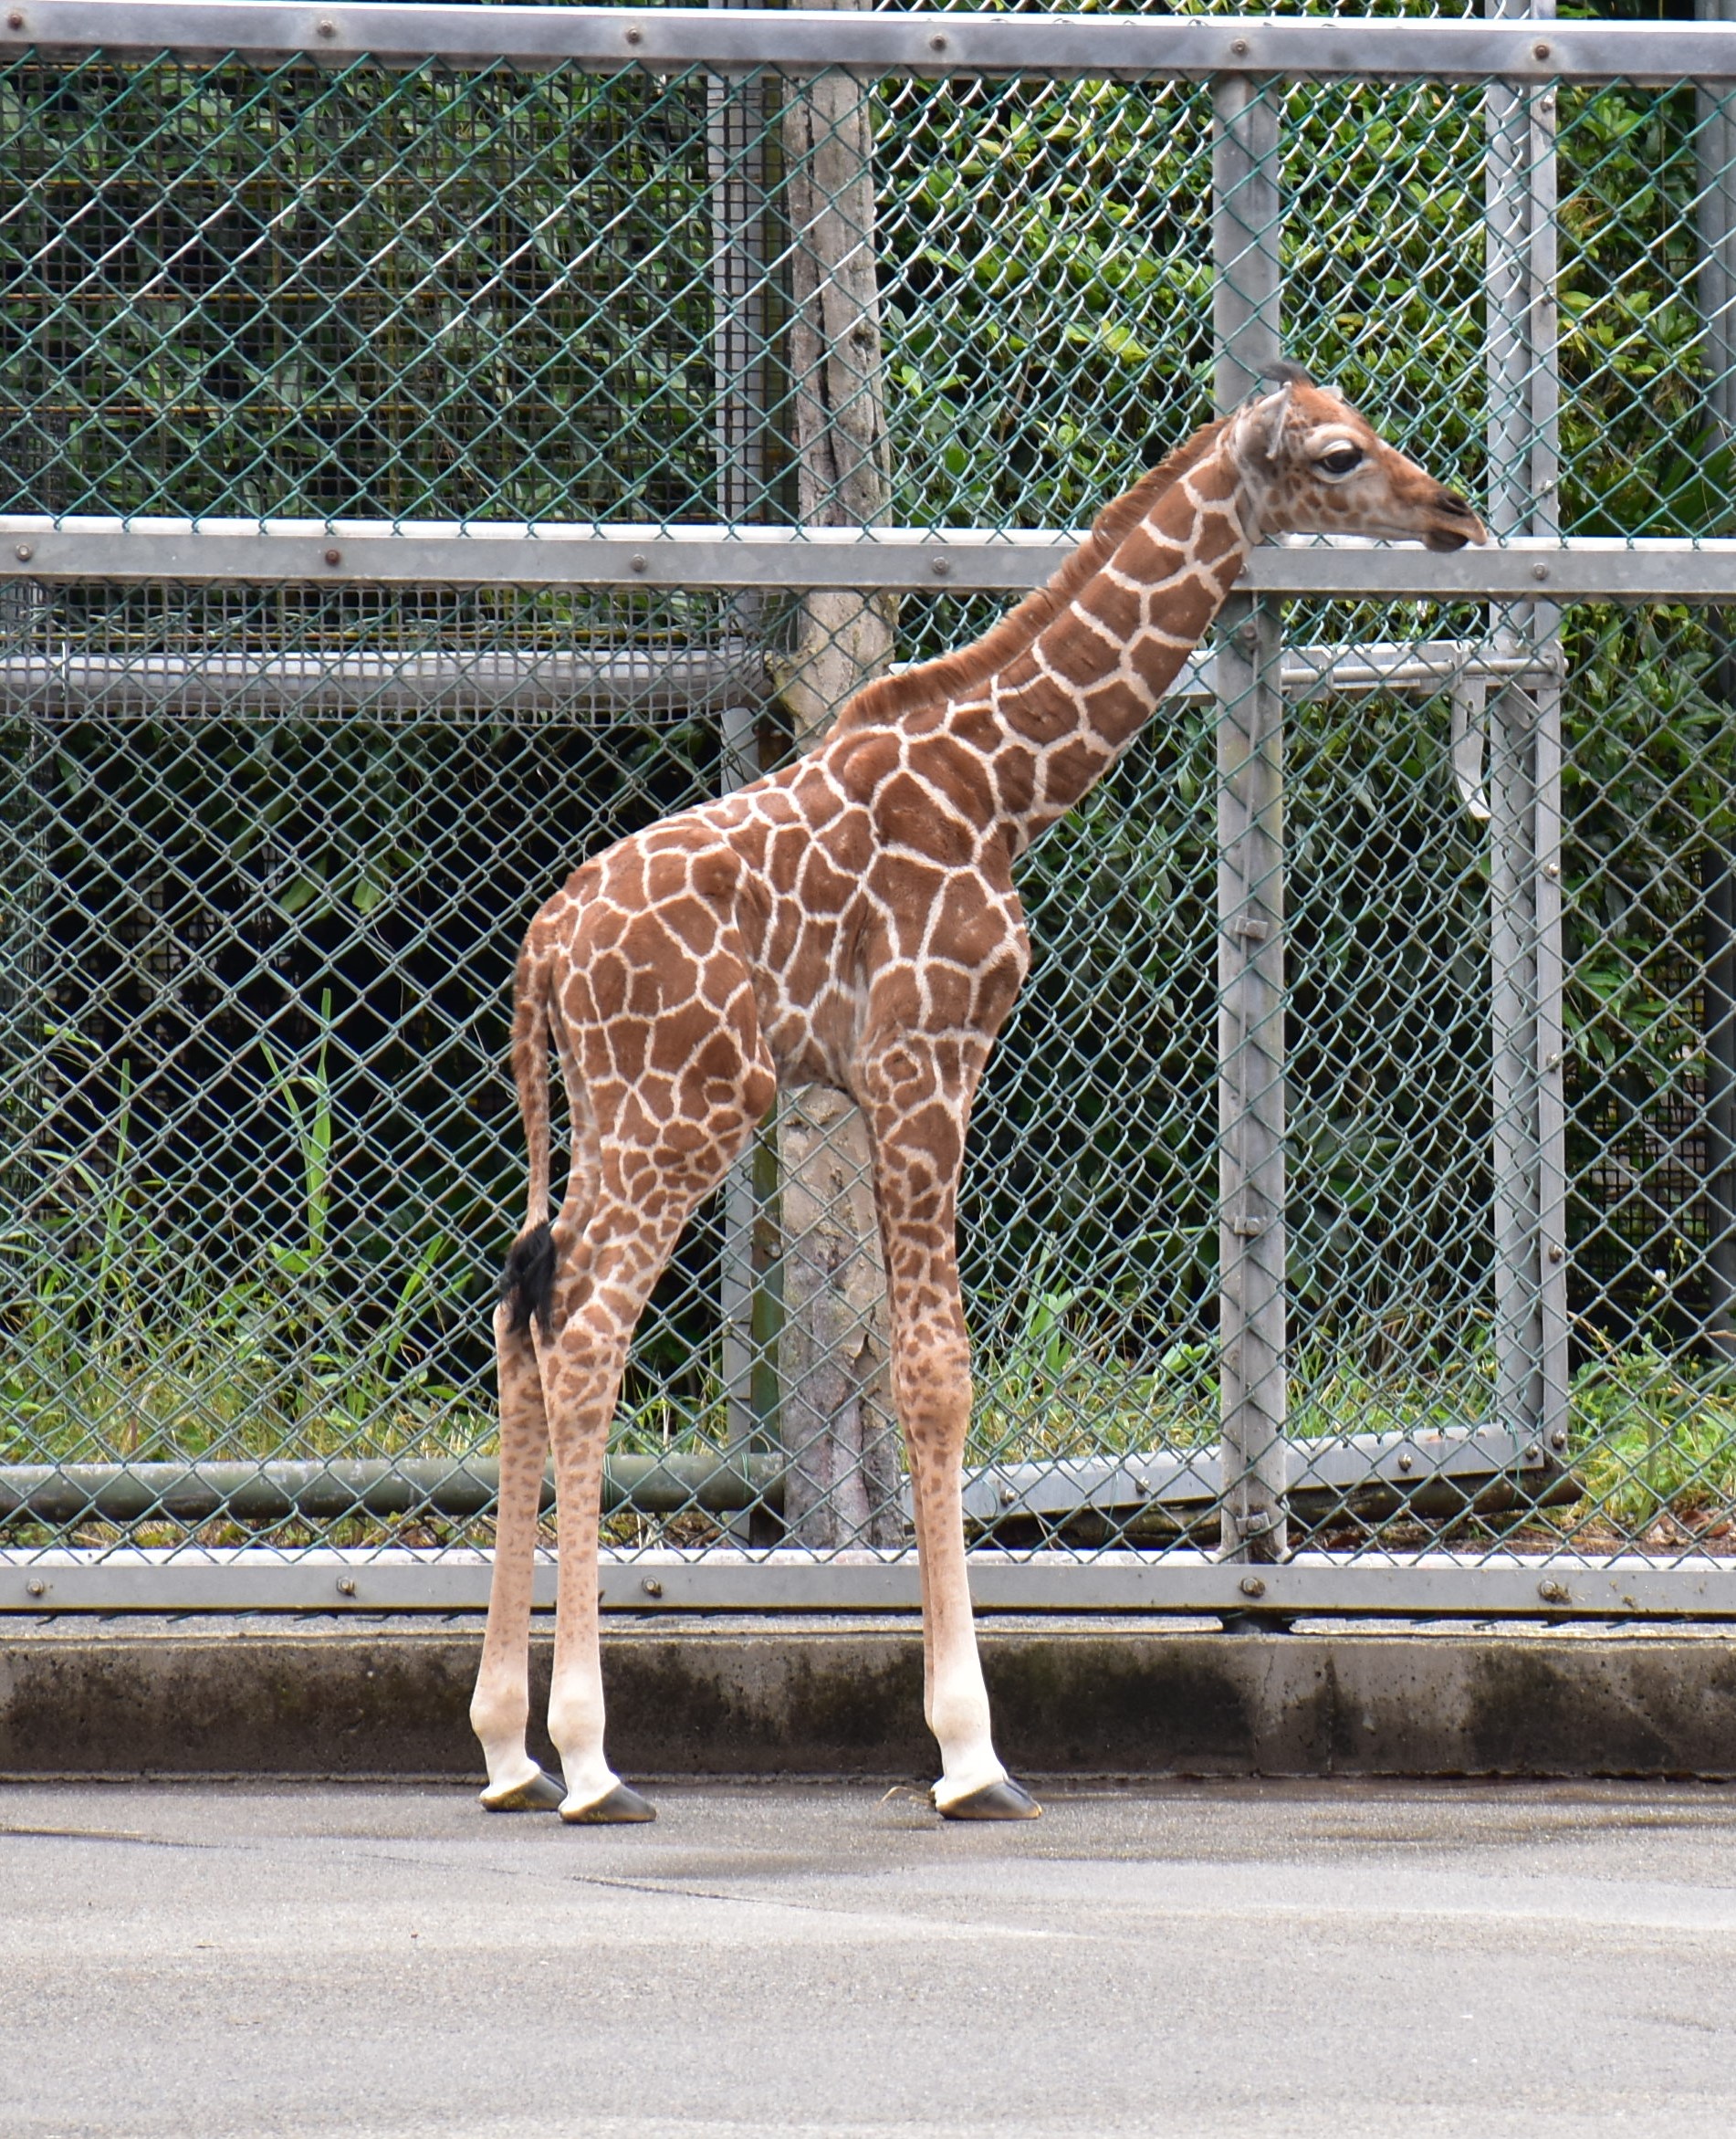 多摩動物公園 公式 最近気が付いたのですが チーターの模様は 体より肢の方が大きいんですね てっきり 細い部分 小さい部分は模様も小さくなるものかと思っていました キリンは後者で 肢の方が模様が小さいです 普 キリン Giraffe